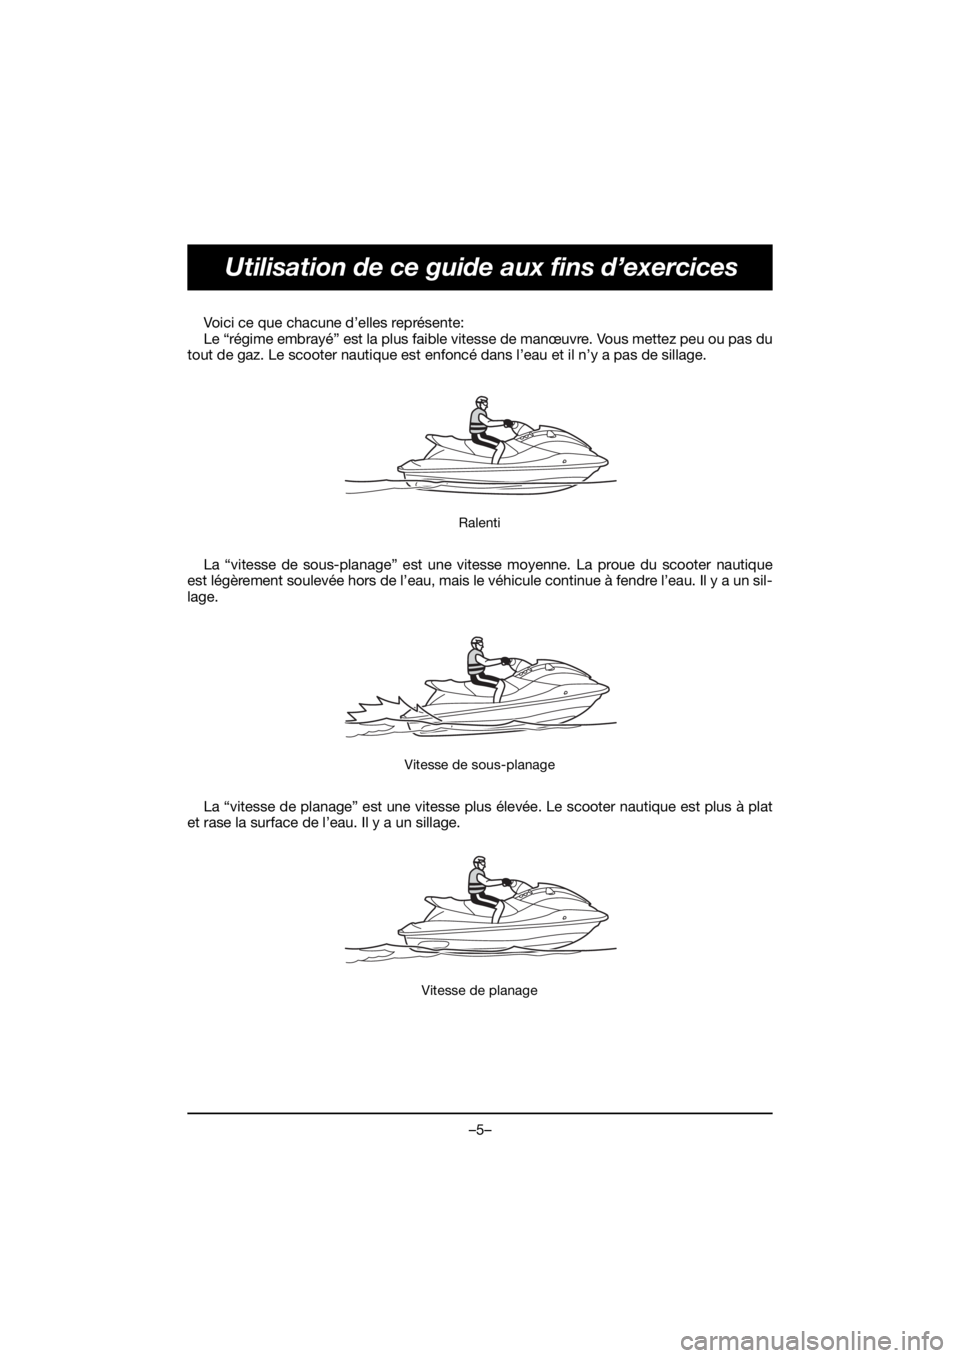 YAMAHA EX SPORT 2020  Owners Manual –5–
Utilisation de ce guide aux fins d’exercices
Voici ce que chacune d’elles représente: 
Le “régime embrayé” est la plus faible vitesse de manœuvre. Vous mettez peu ou pas du
tout de